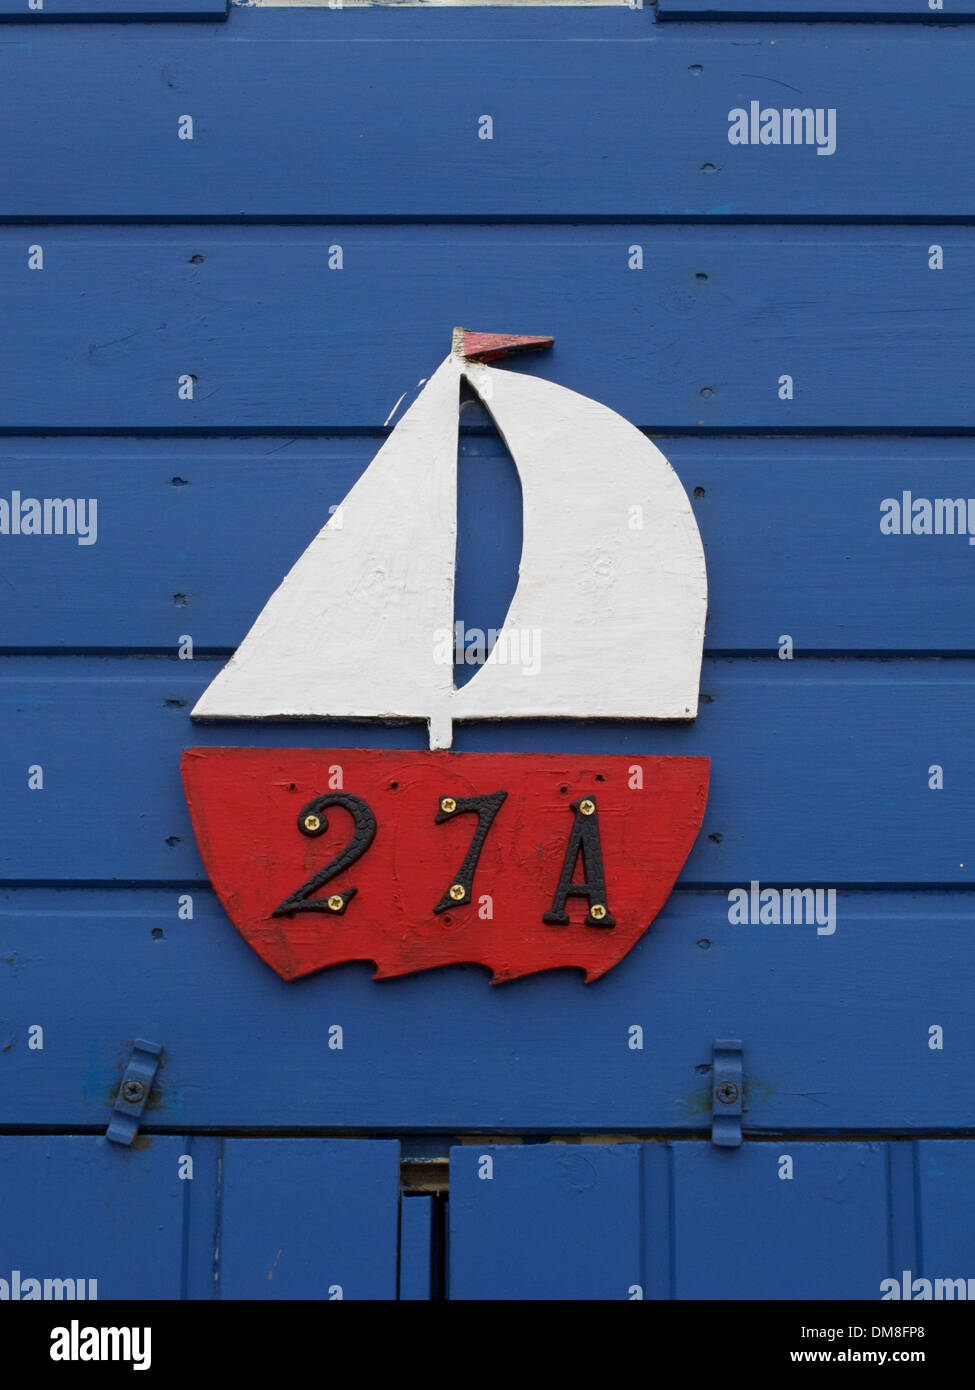 En forme d'un navire dont le nombre 27A sur une cabane de plage bleu à Sheringham, Norfolk, Angleterre, Sheringham.North Norfolk, Angleterre Banque D'Images